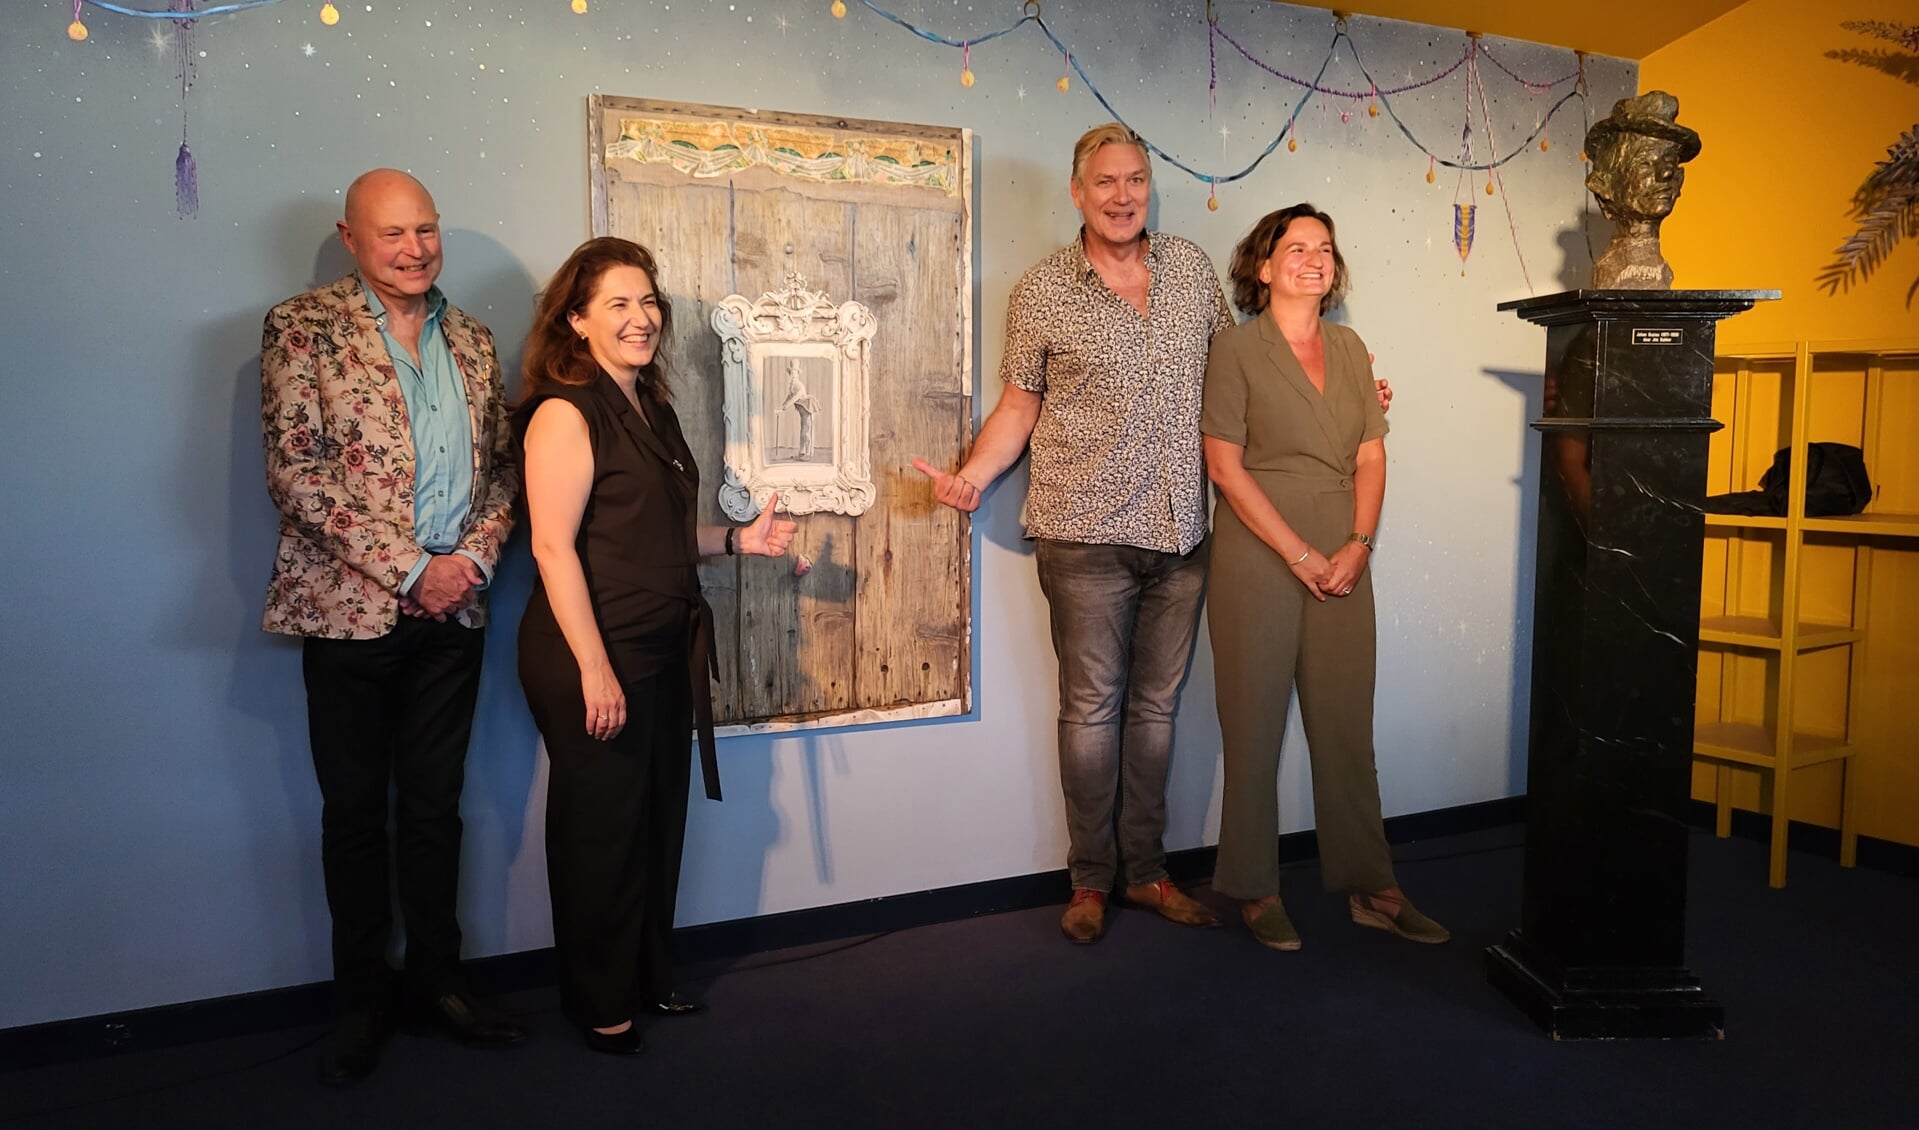 Kunstenaar Jan Berghuis, burgemeester Huri Sahin, cabaretier Sjaak Bral en schouwburg directrice Renee van Ingen poseren bij het schilderij van Johan Buziau.